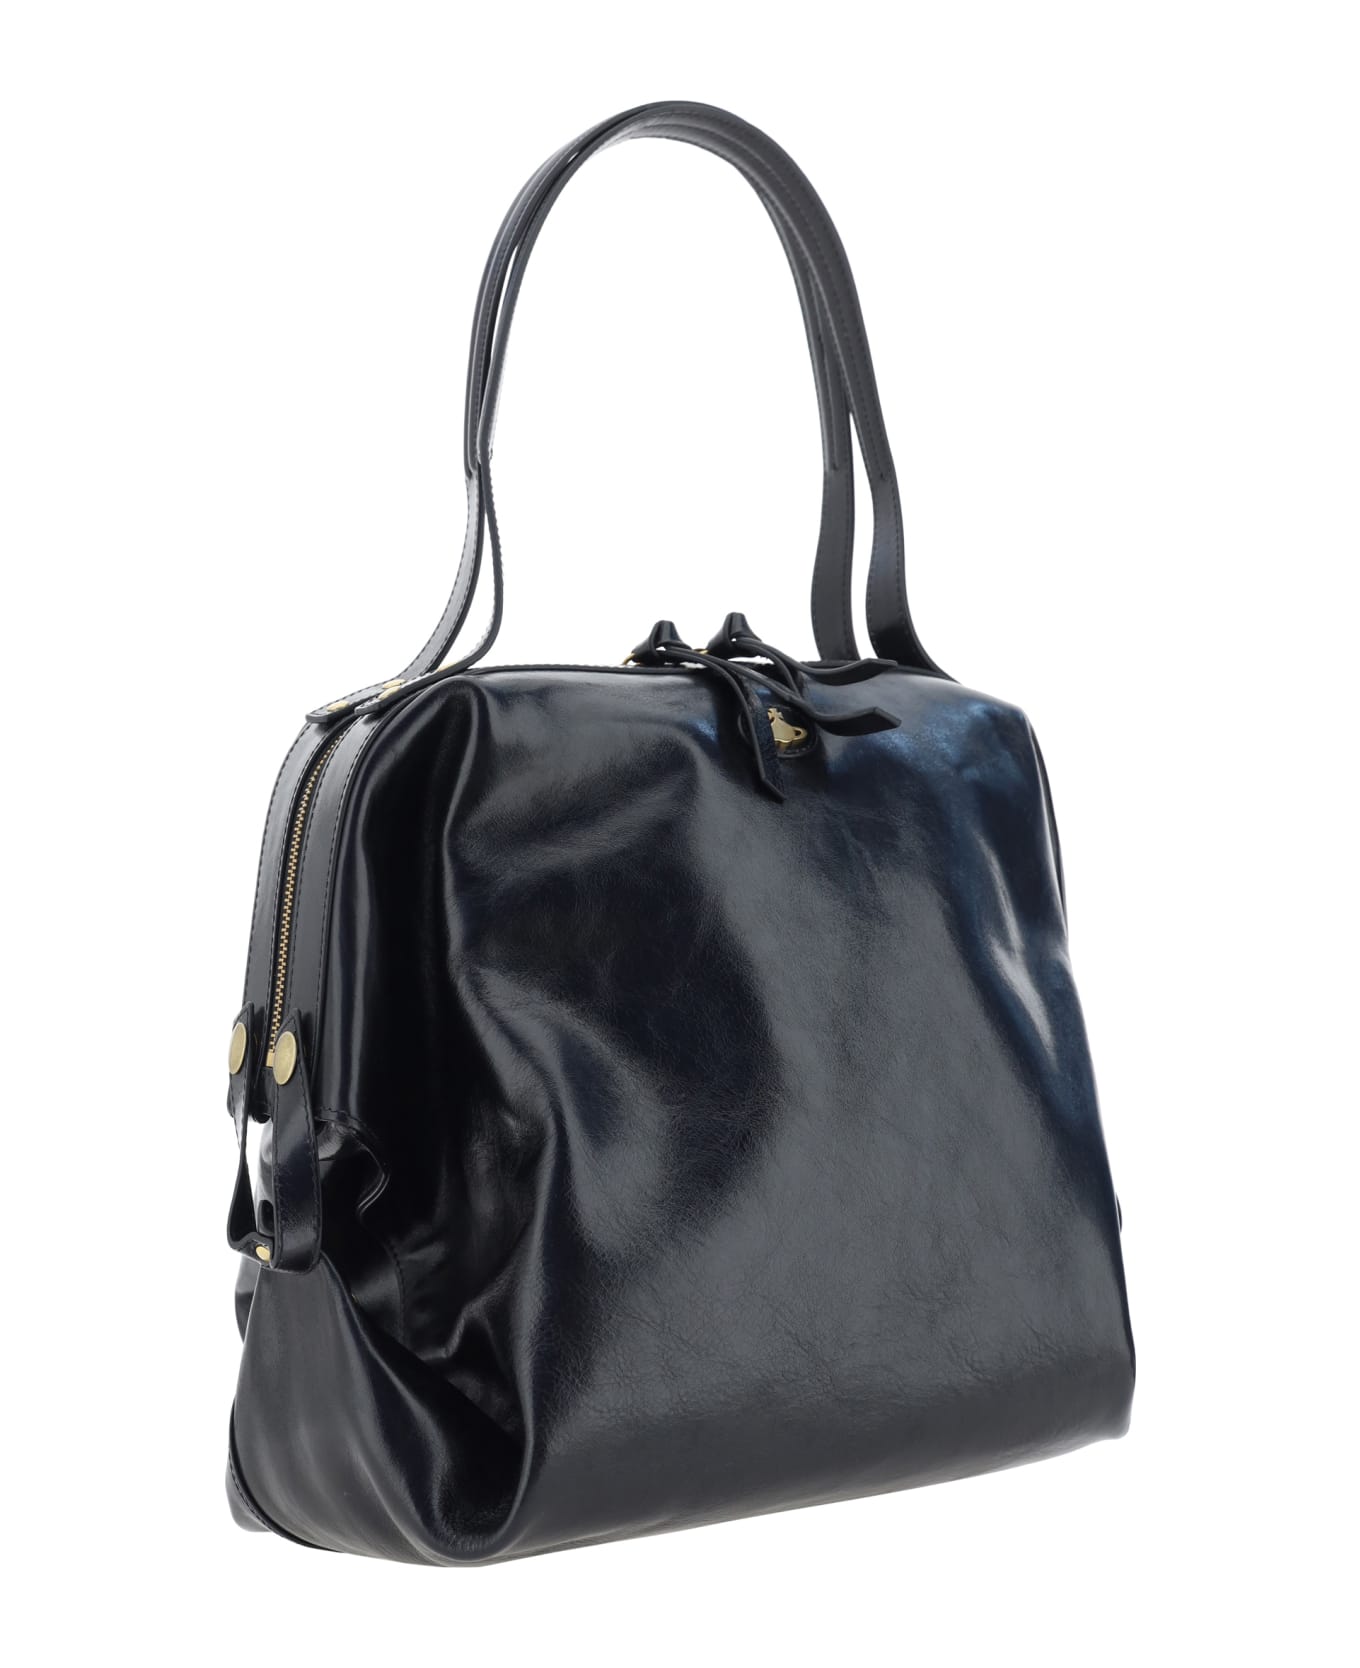 Vivienne Westwood Mara Shoulder Bag - Black